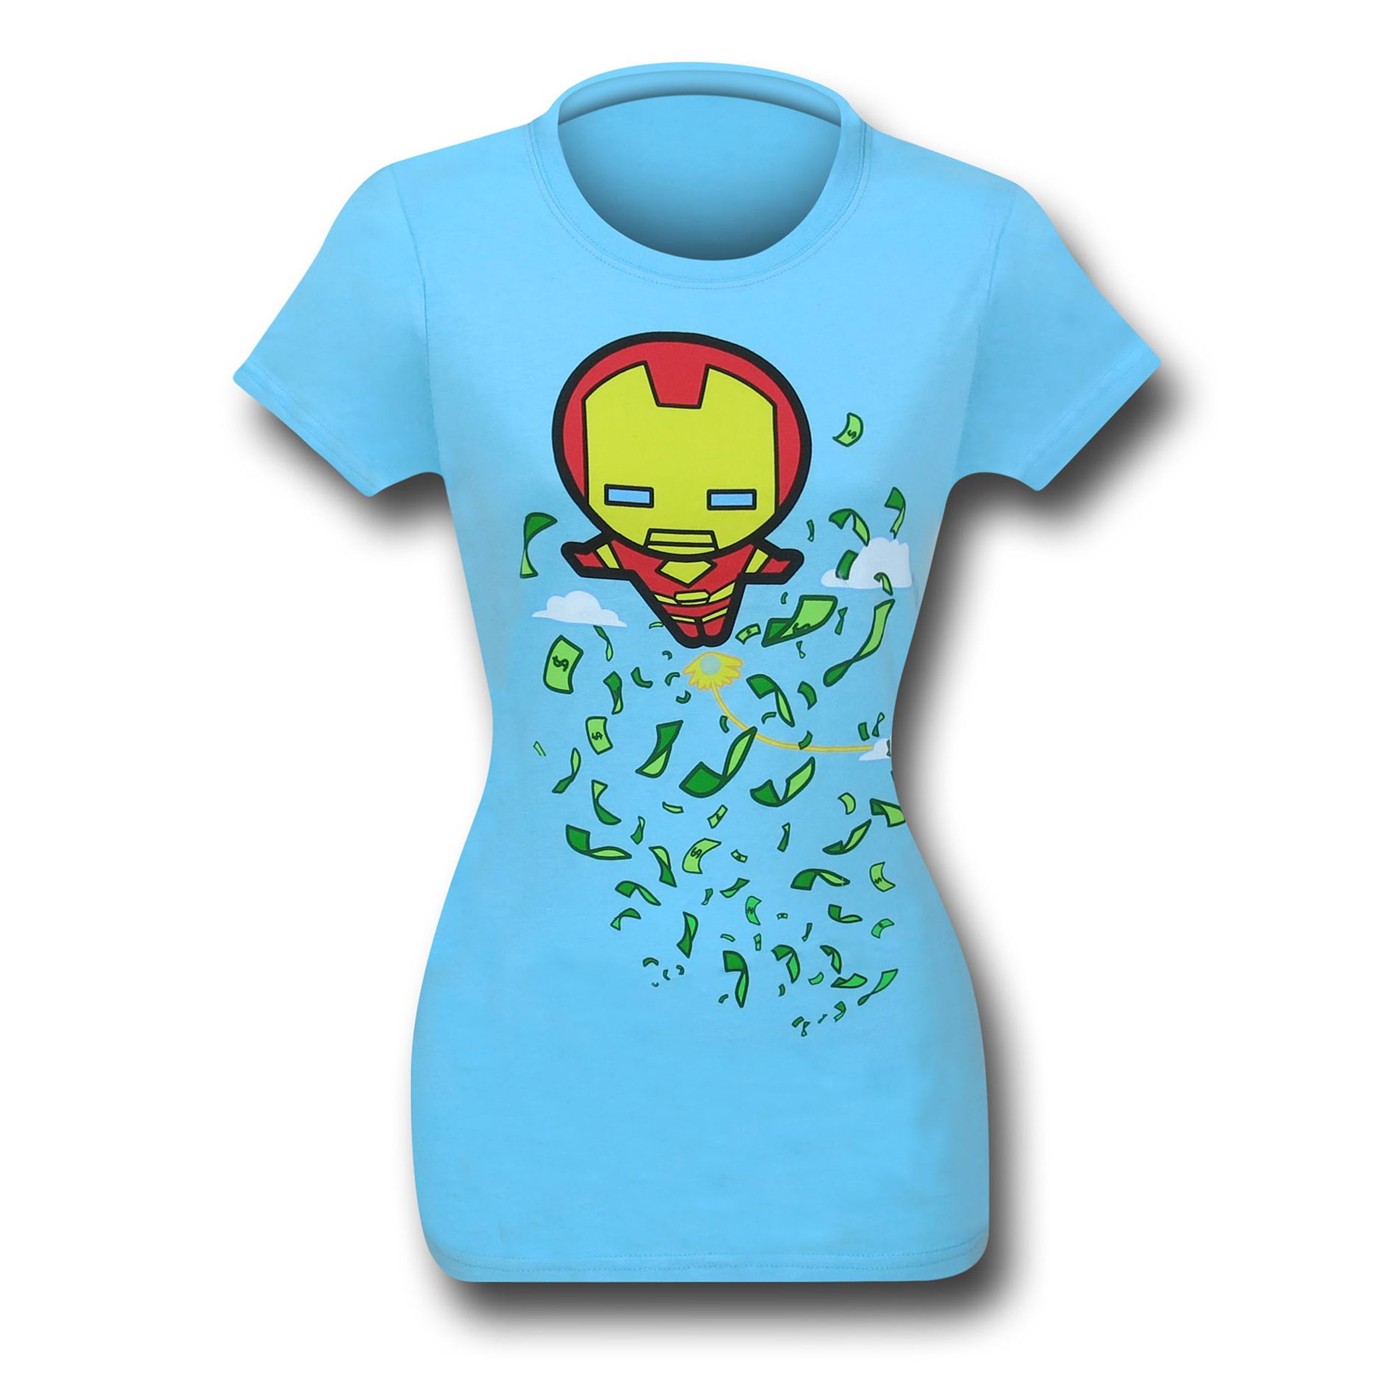 Iron Man Kawaii Flight Women's T-Shirt